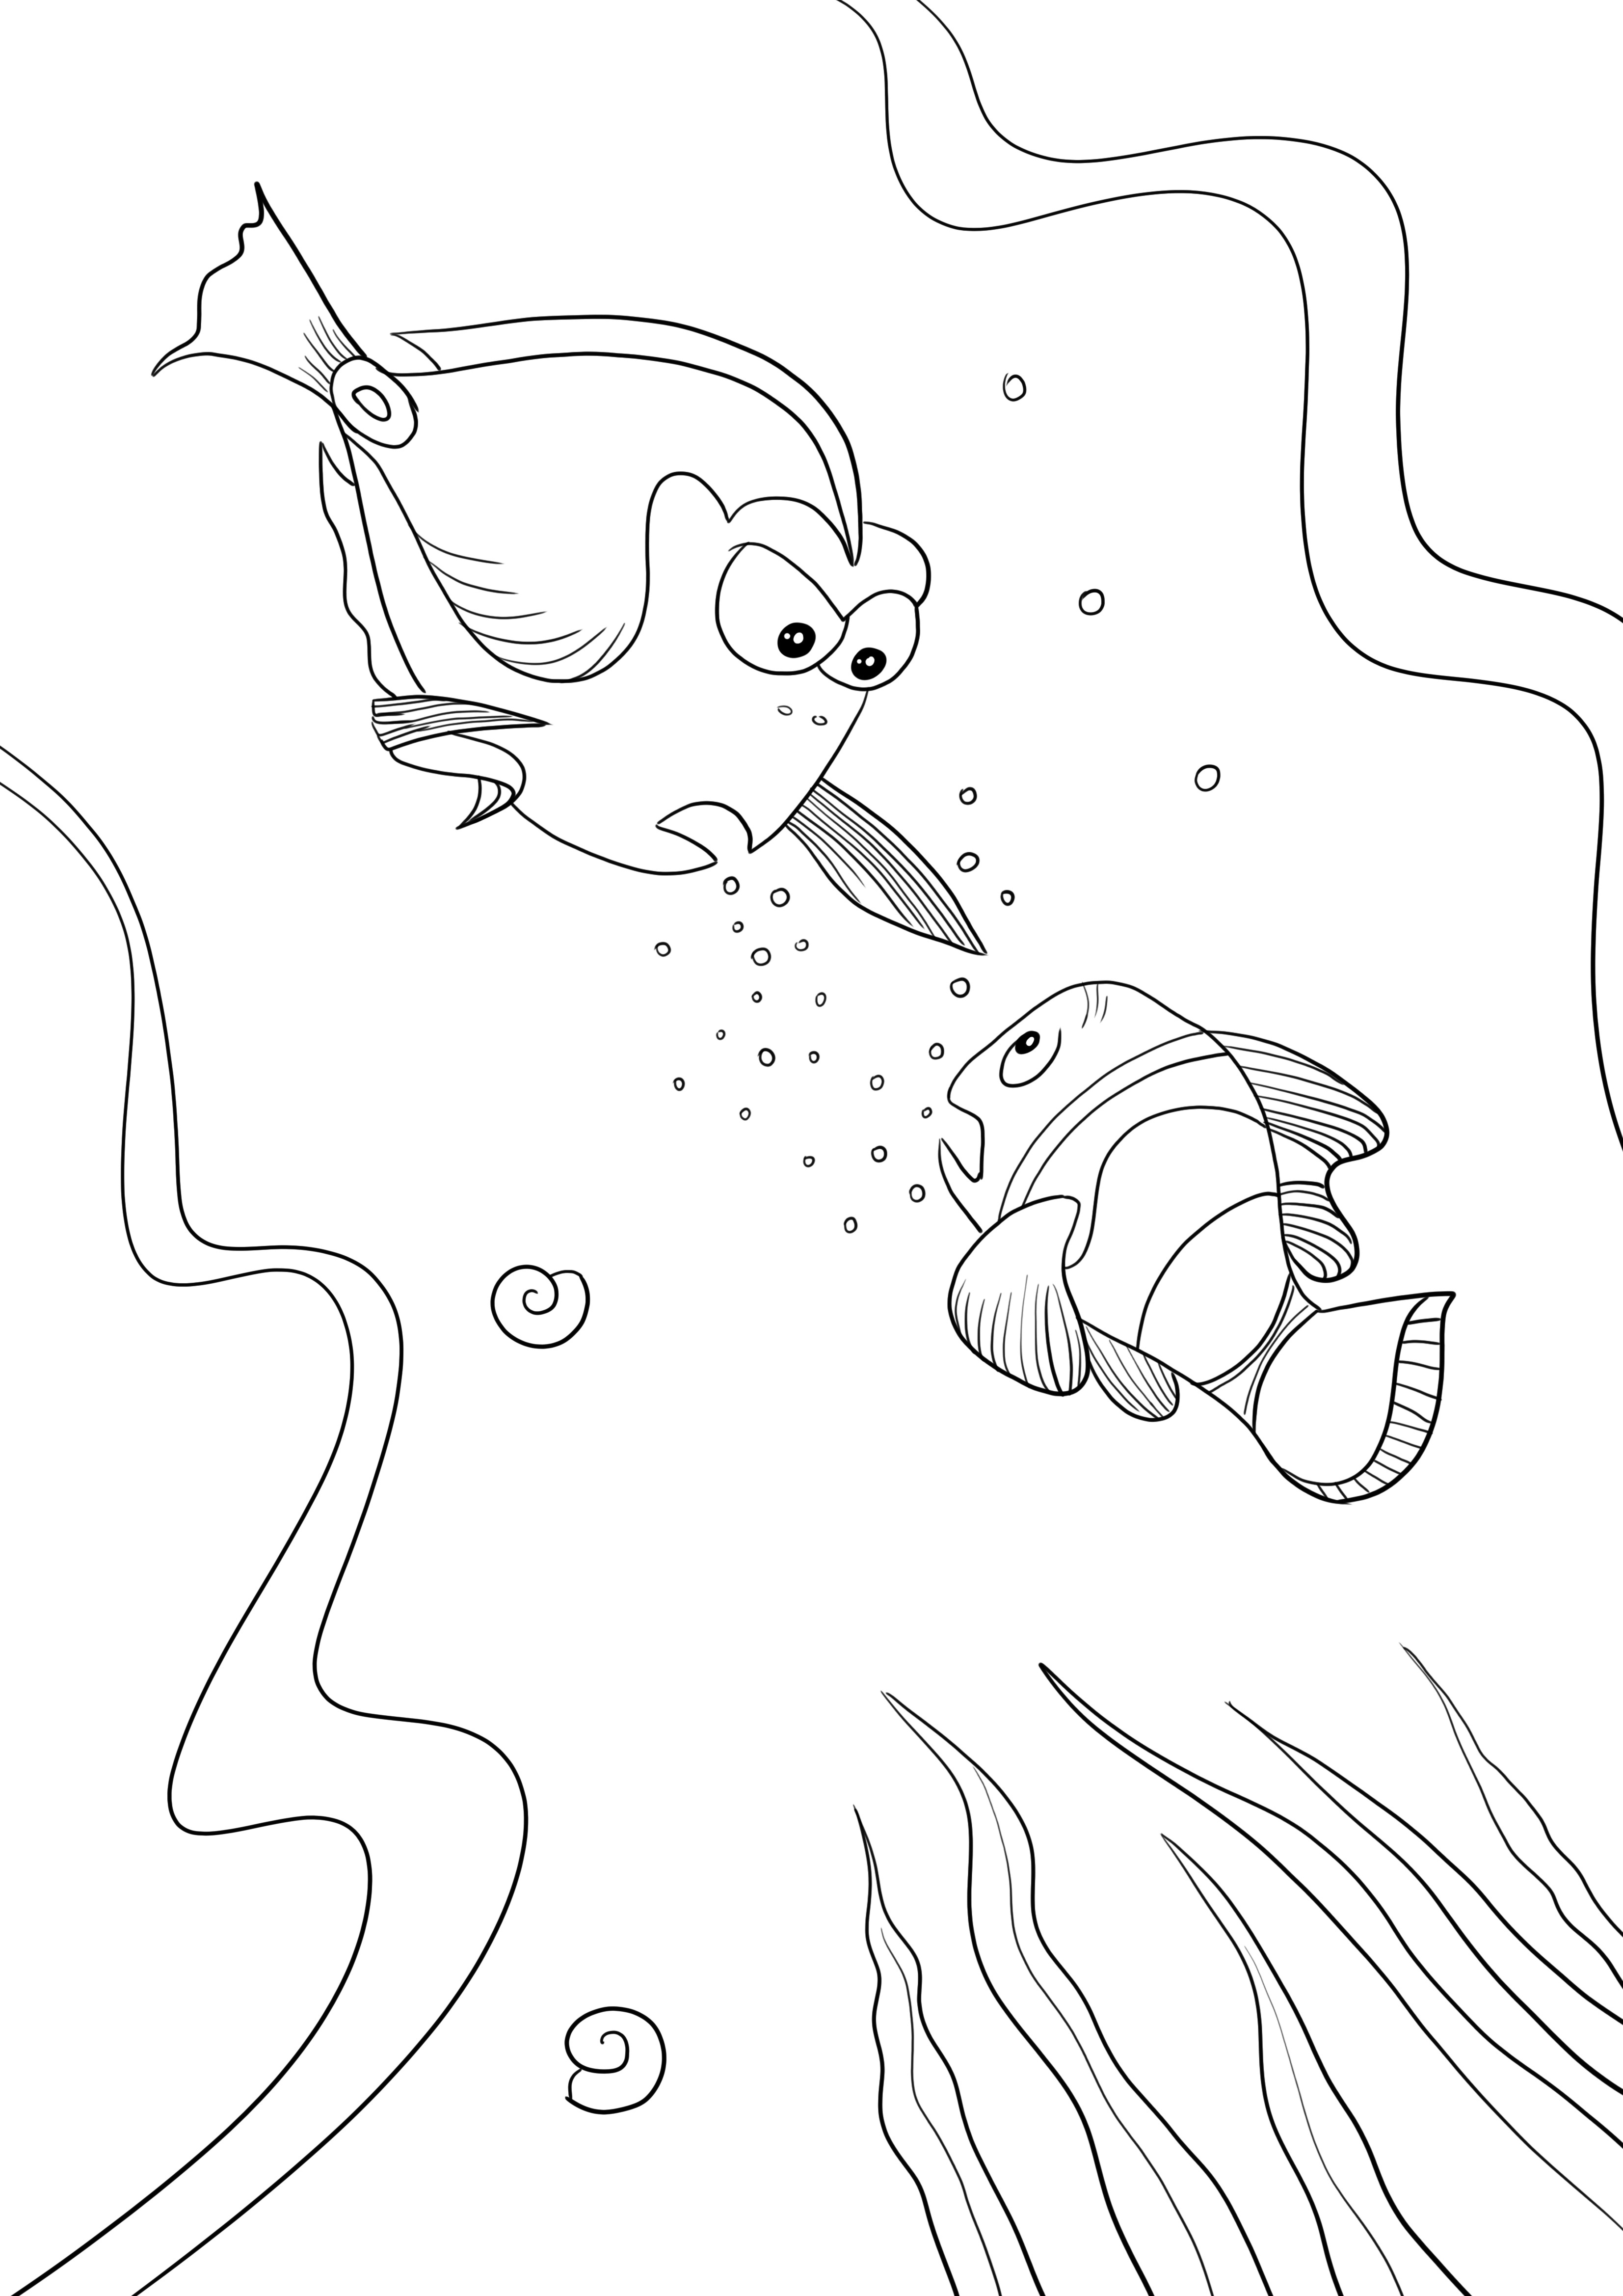 Finding Nemo'dan çocuklar için renkli yazdırılabilir resimden Dory